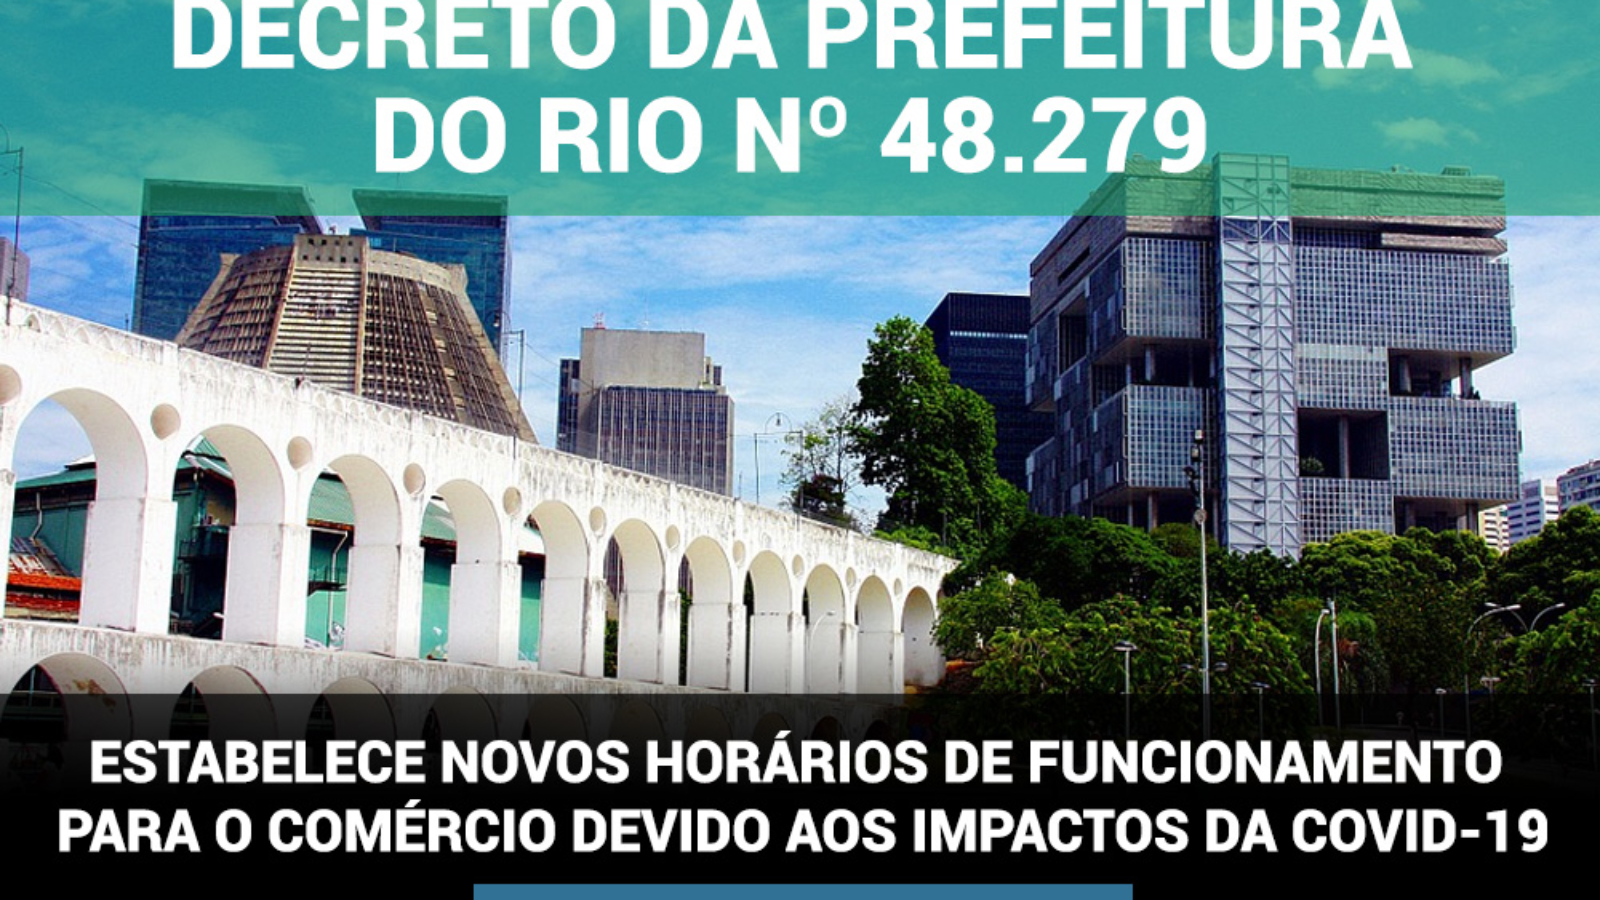 DECRETO DA PREFEITURA DO RIO Nº 48.279